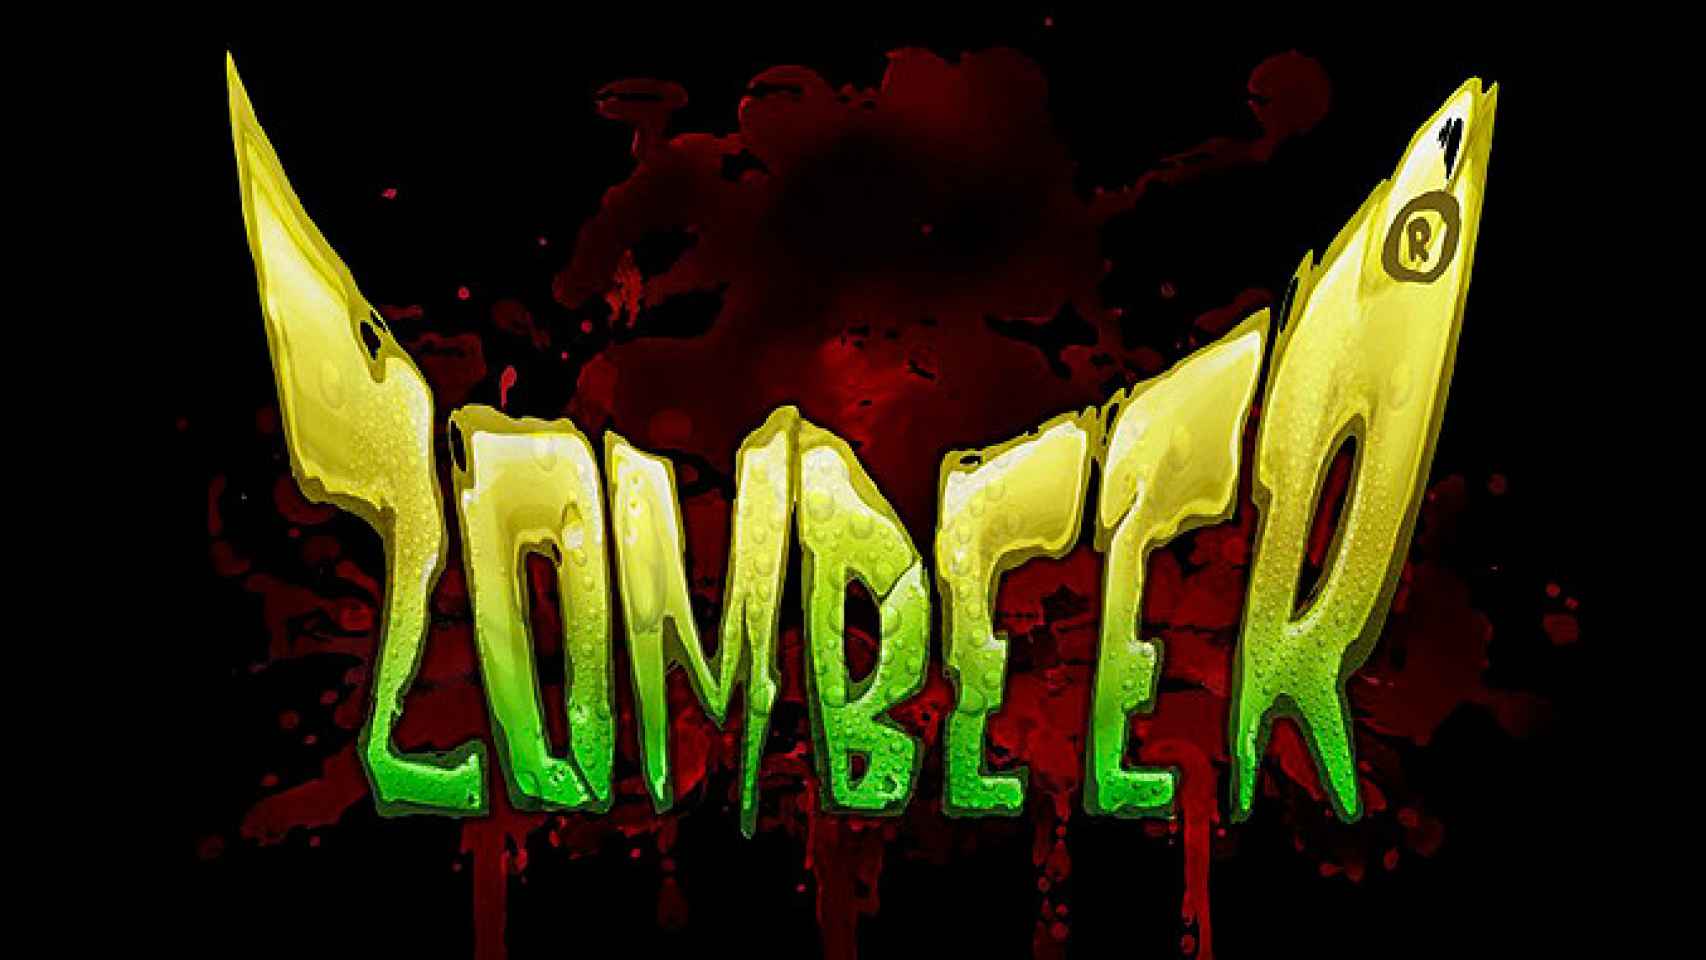 Logotipo del videojuego Zombeer